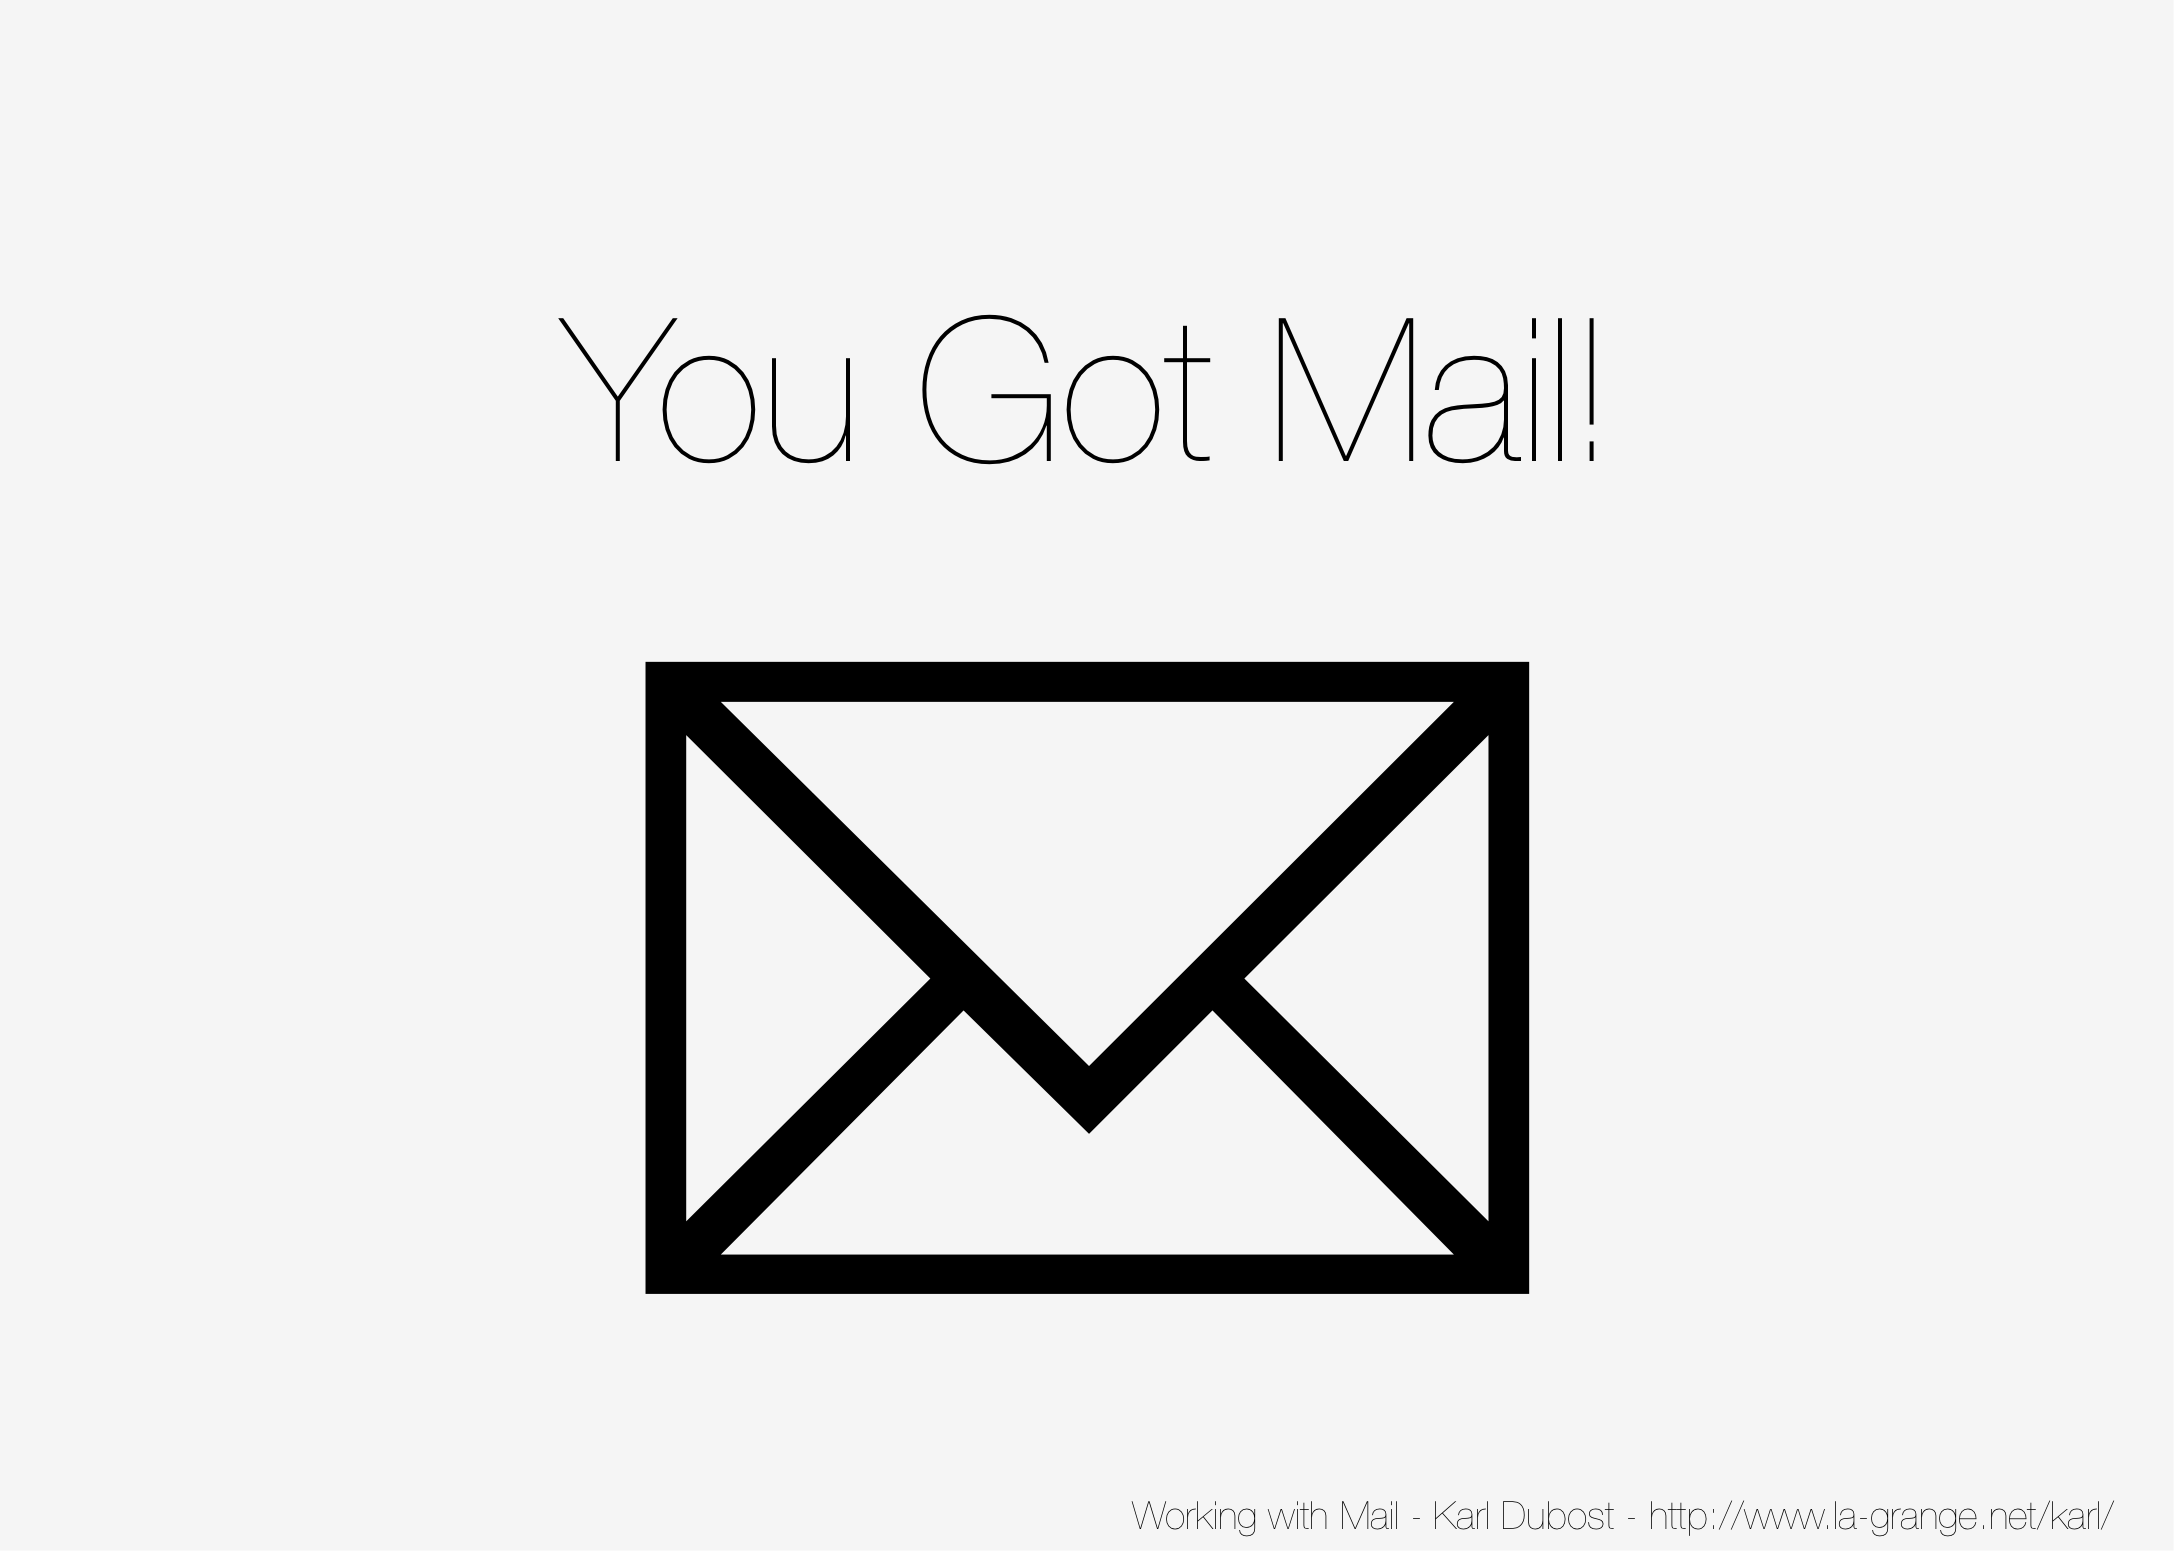 Slide 01 - You Got Mail